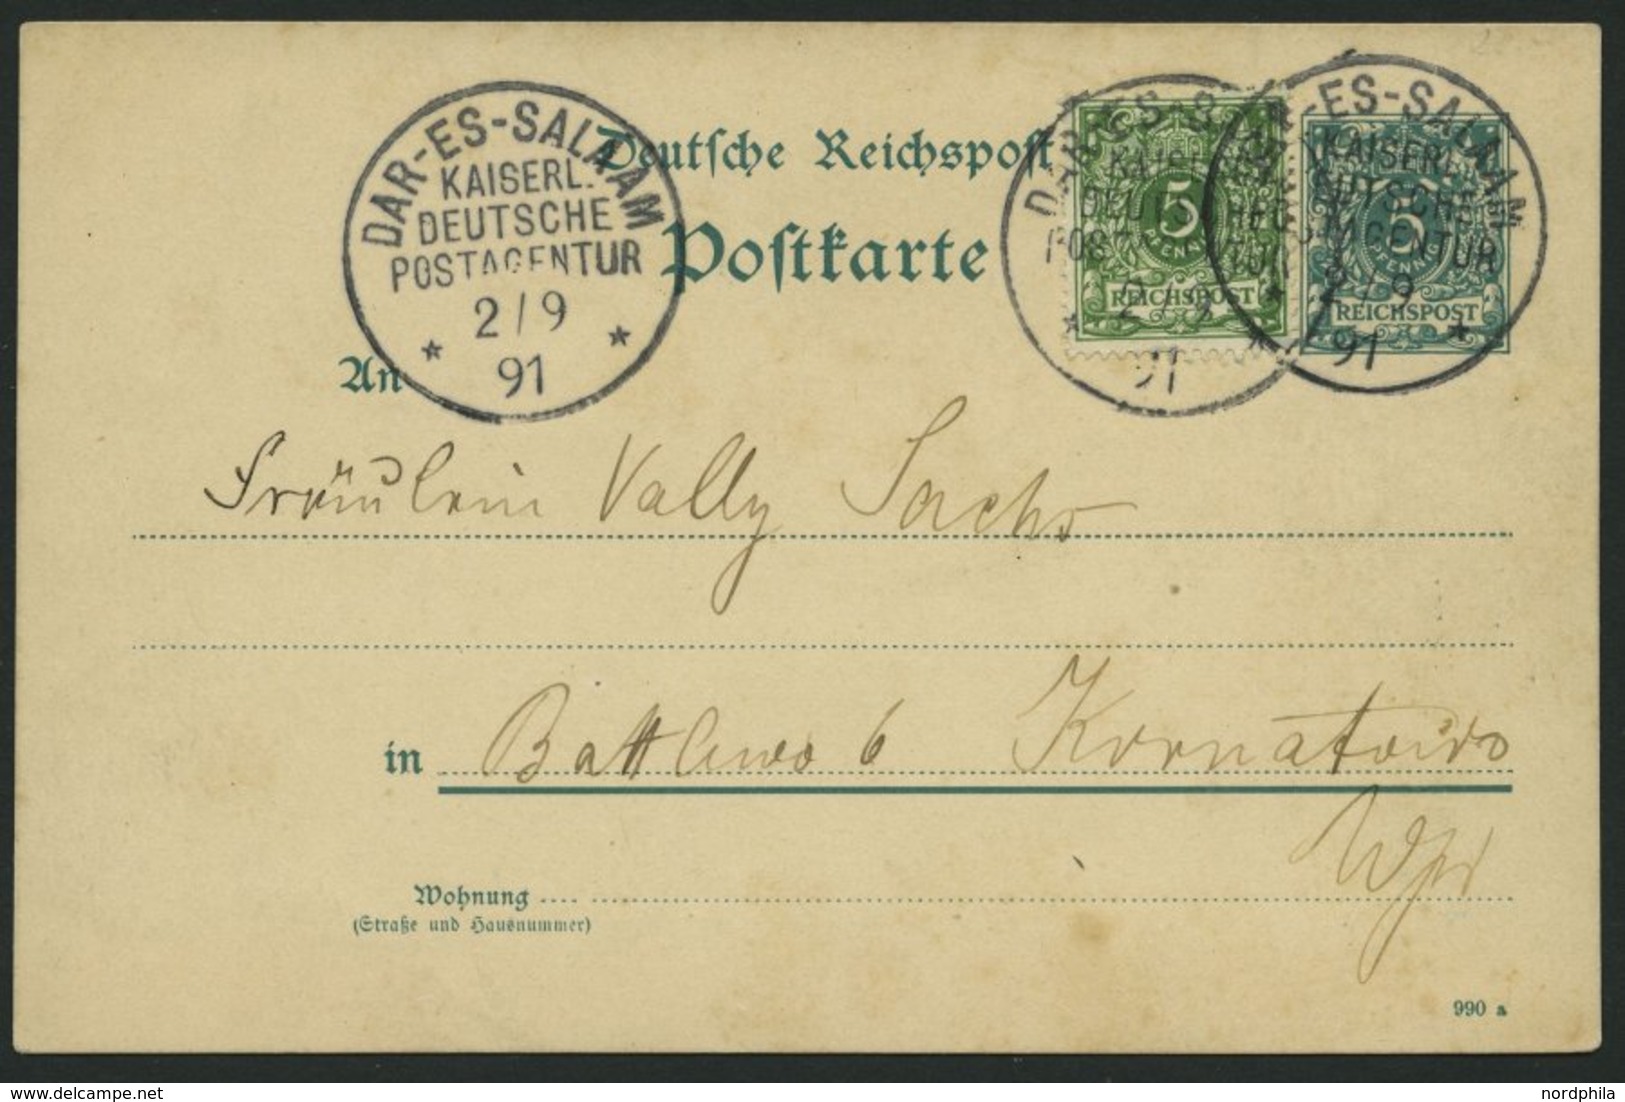 DEUTSCH-OSTAFRIKA VO 46b,VP BRIEF, 1891, 5 Pf. Gelblichgrün Als Zusatzfrankatur Auf 5 Pf. Ganzsachenkarte Mit Stempel DA - Africa Orientale Tedesca